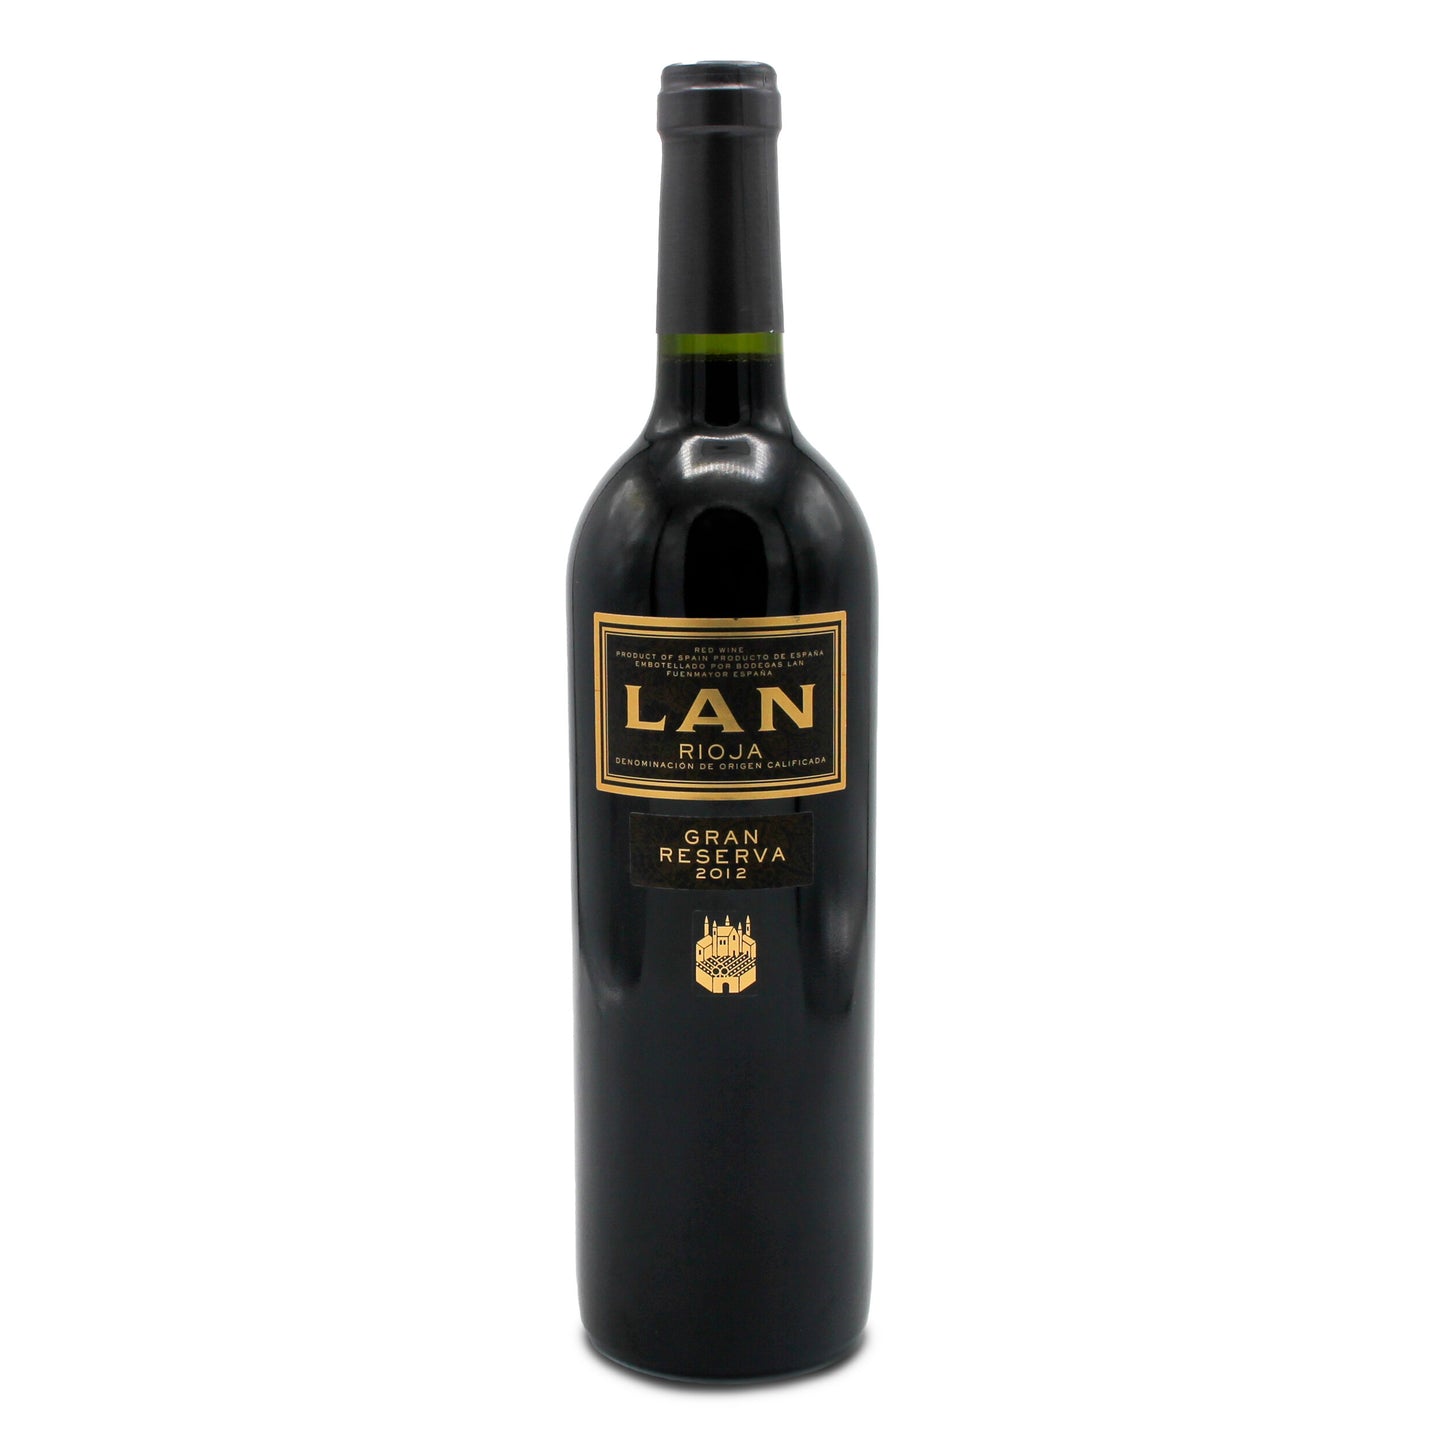 LAN Rioja Gran Reserva, Spain 2016